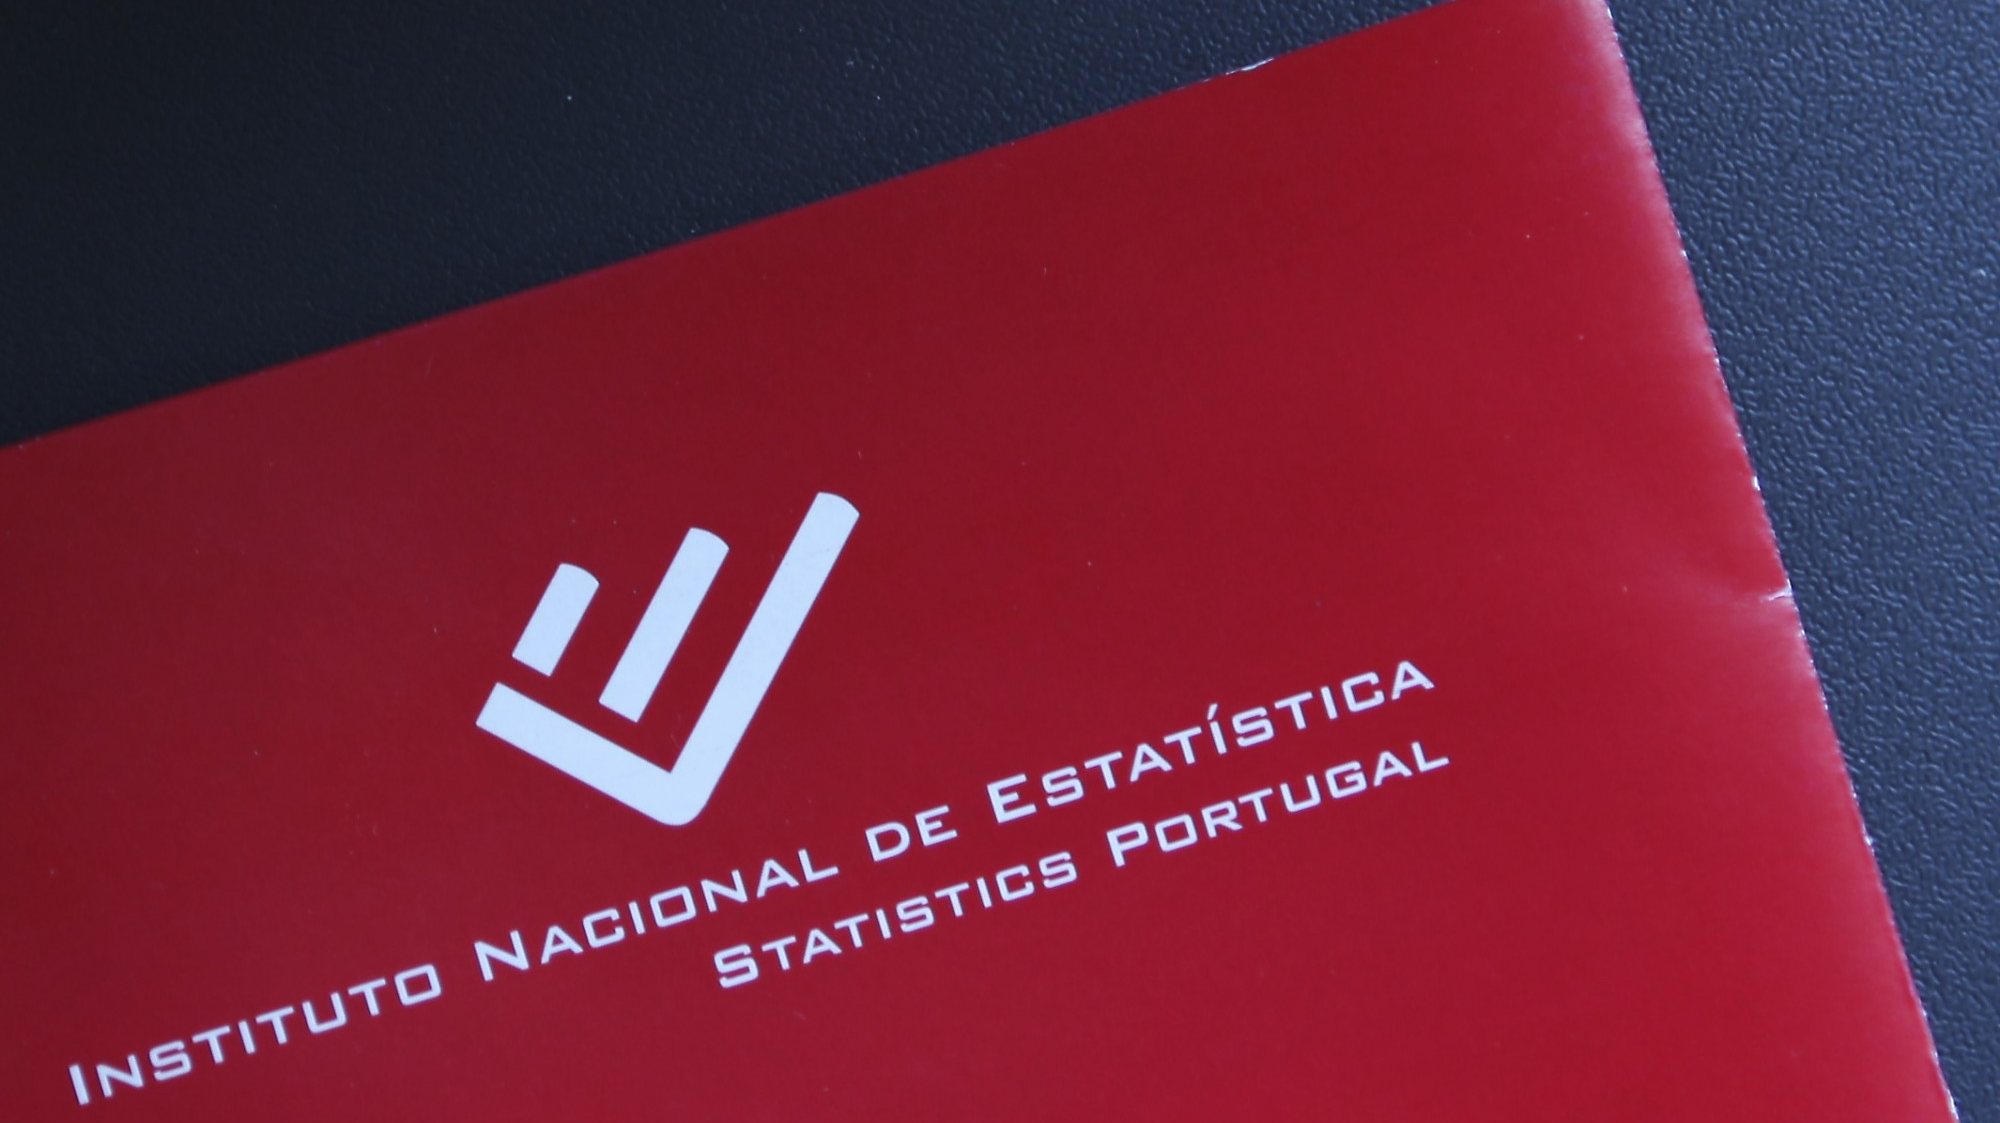 Instituto Nacional de Estatistica (INE).